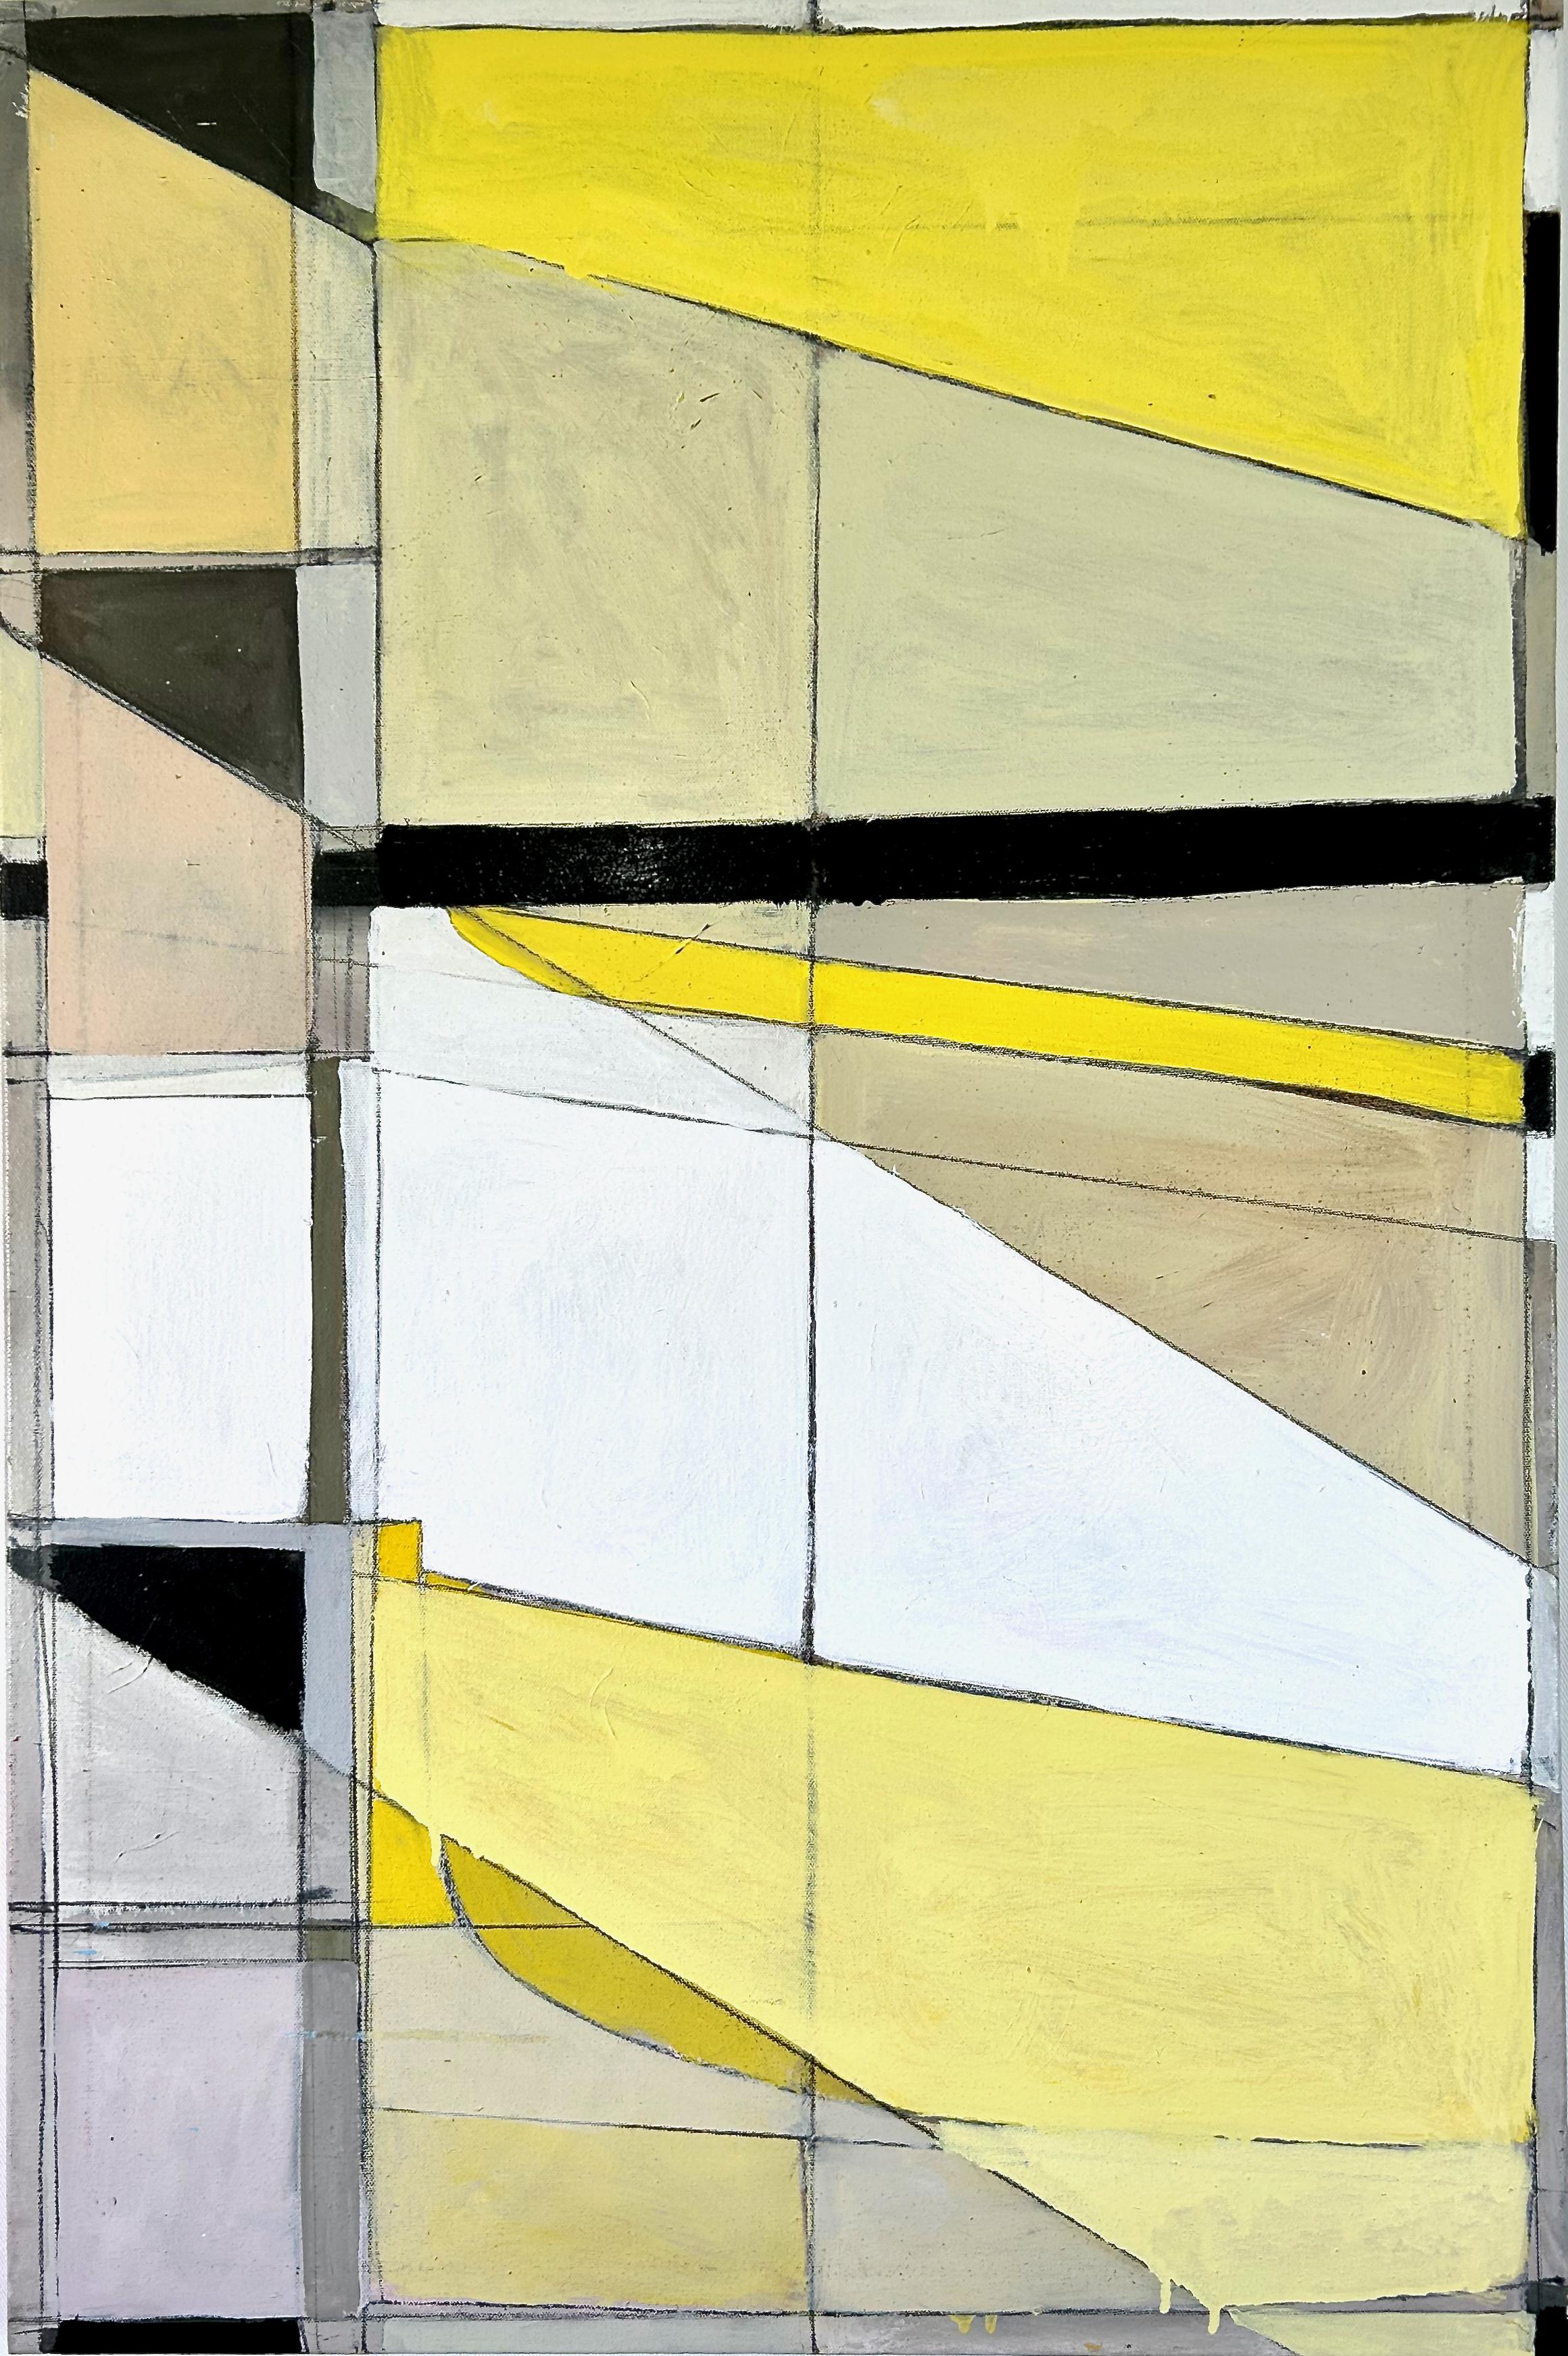 Ospedale III (peinture géométrique abstraite contemporaine en jaune et noir)